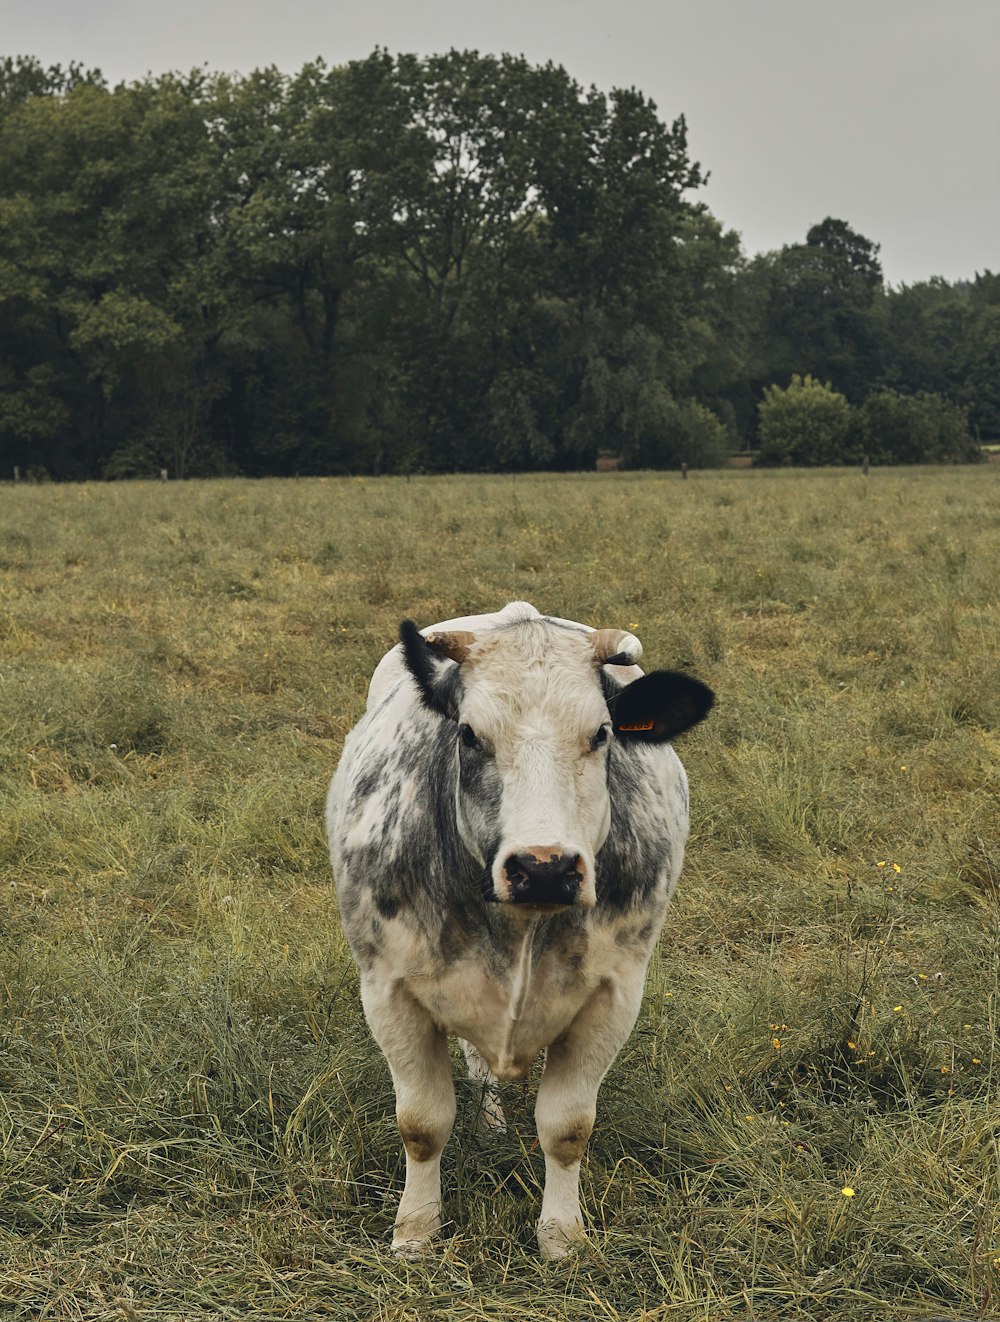 vache blanche et noire dans un champ d’herbe verte pendant la journée